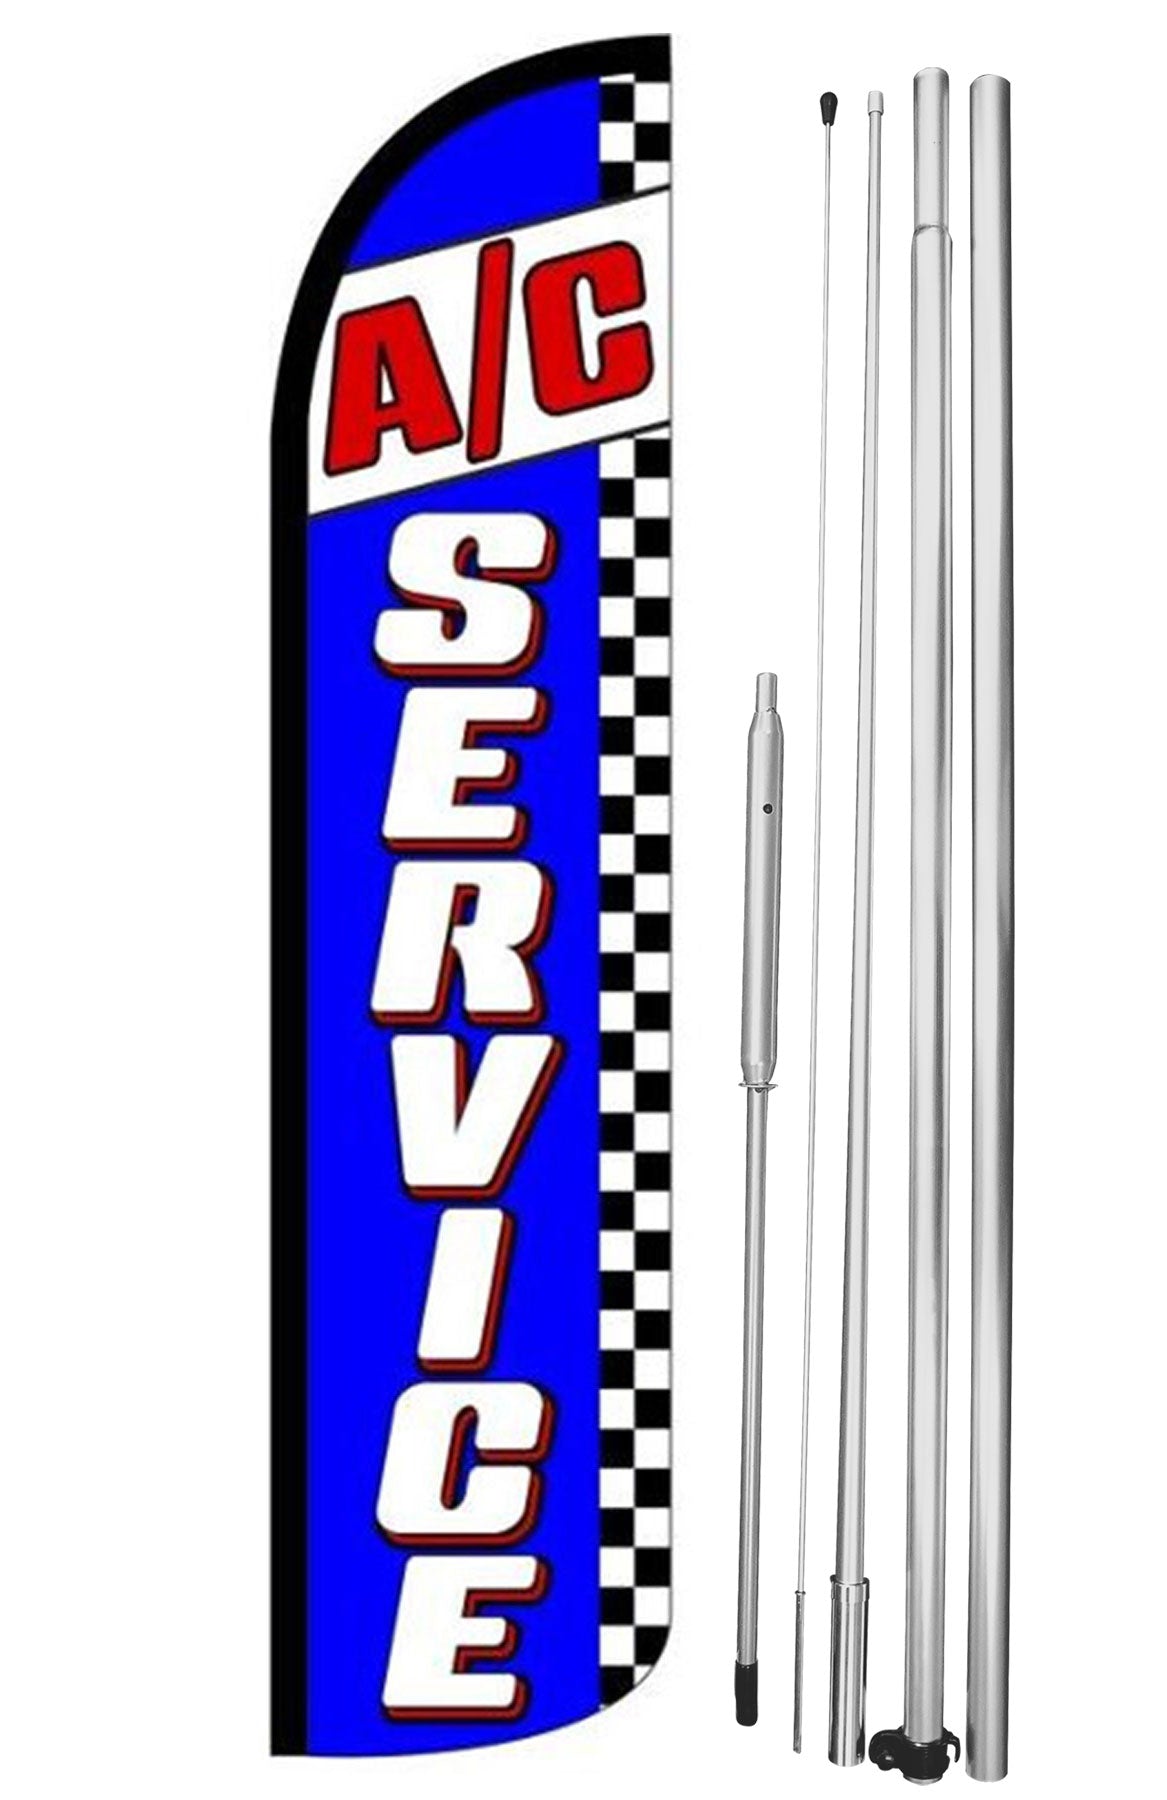 A/C SERVICES (BLUE)